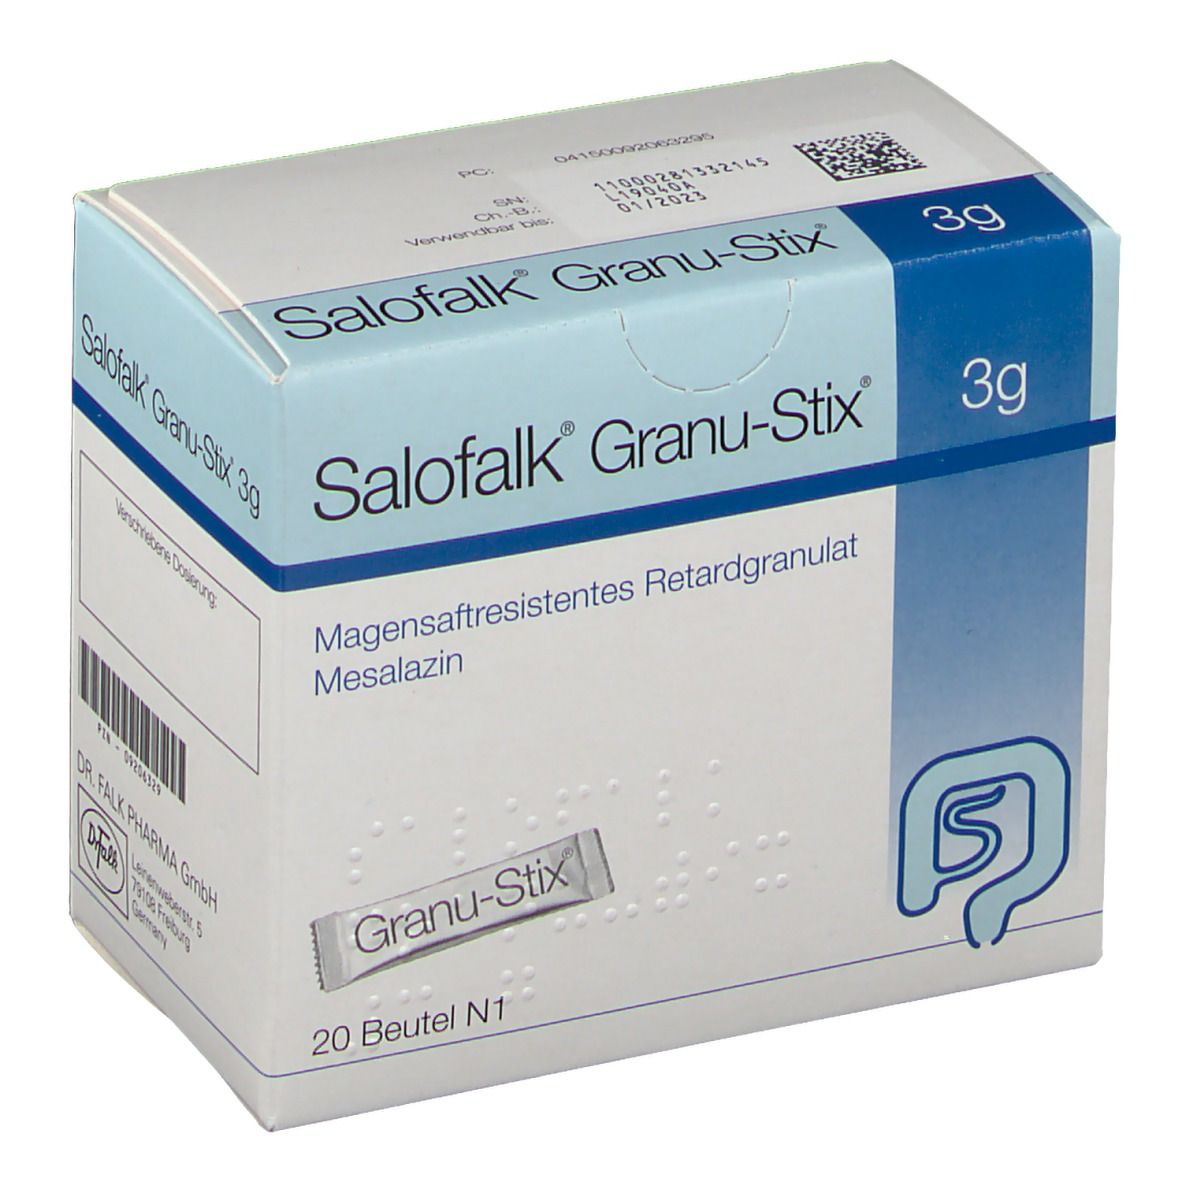 Salofalk® Granu-Stix 3 g